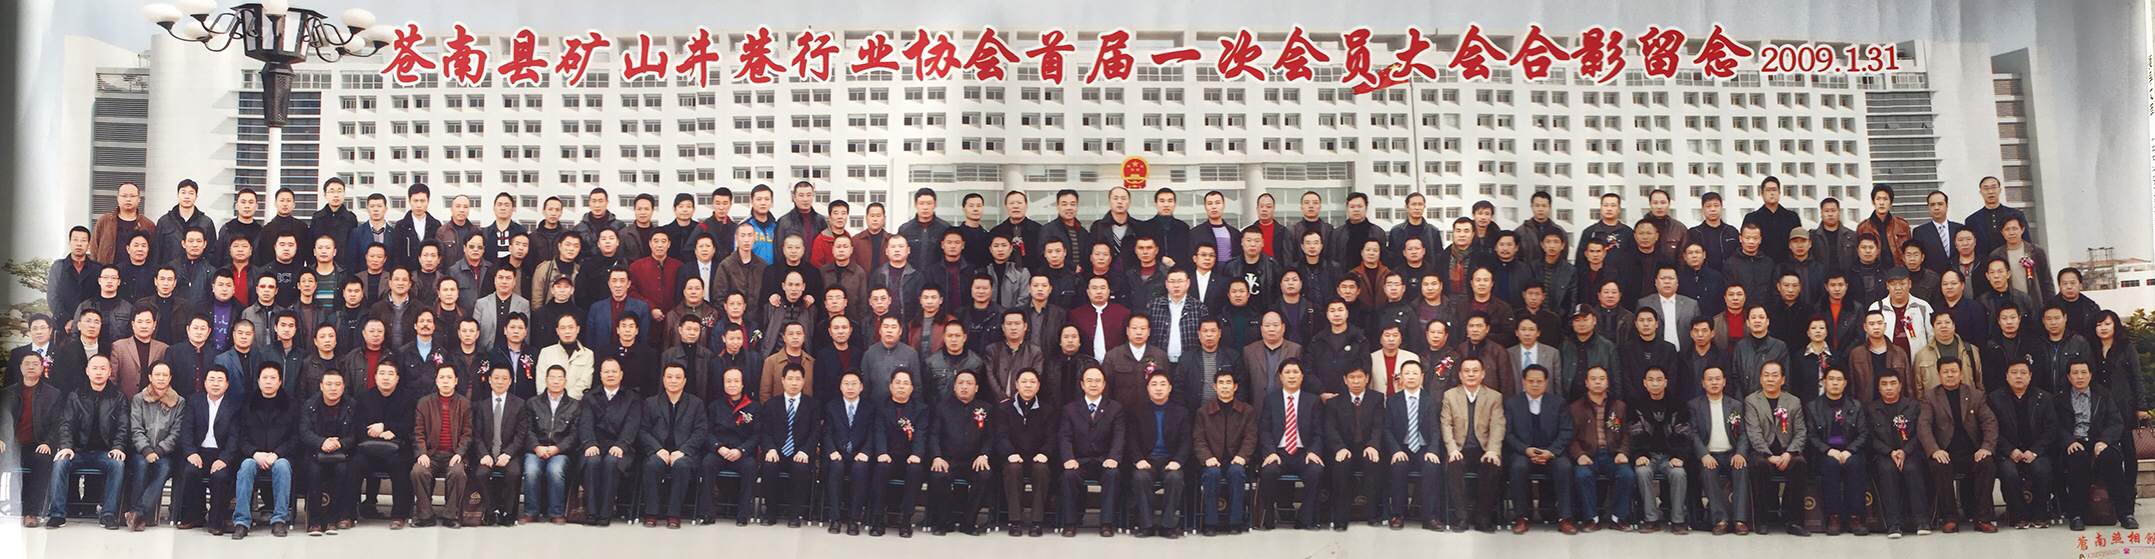 2009年1月31日苍南县矿山井巷行业协会首届一次会员大会合影留念